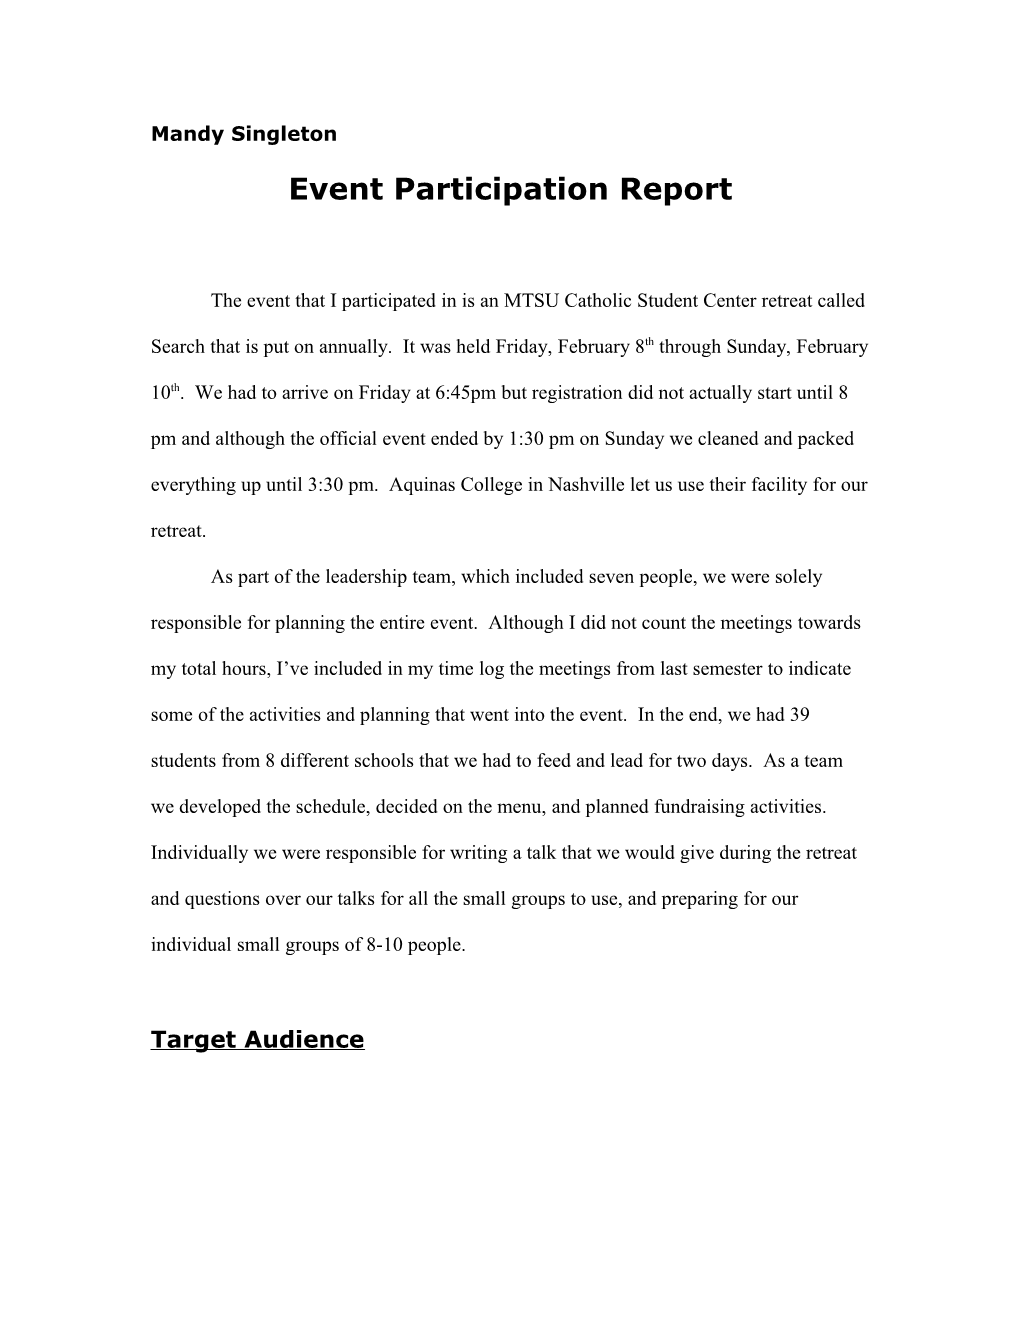 Event Participation Report